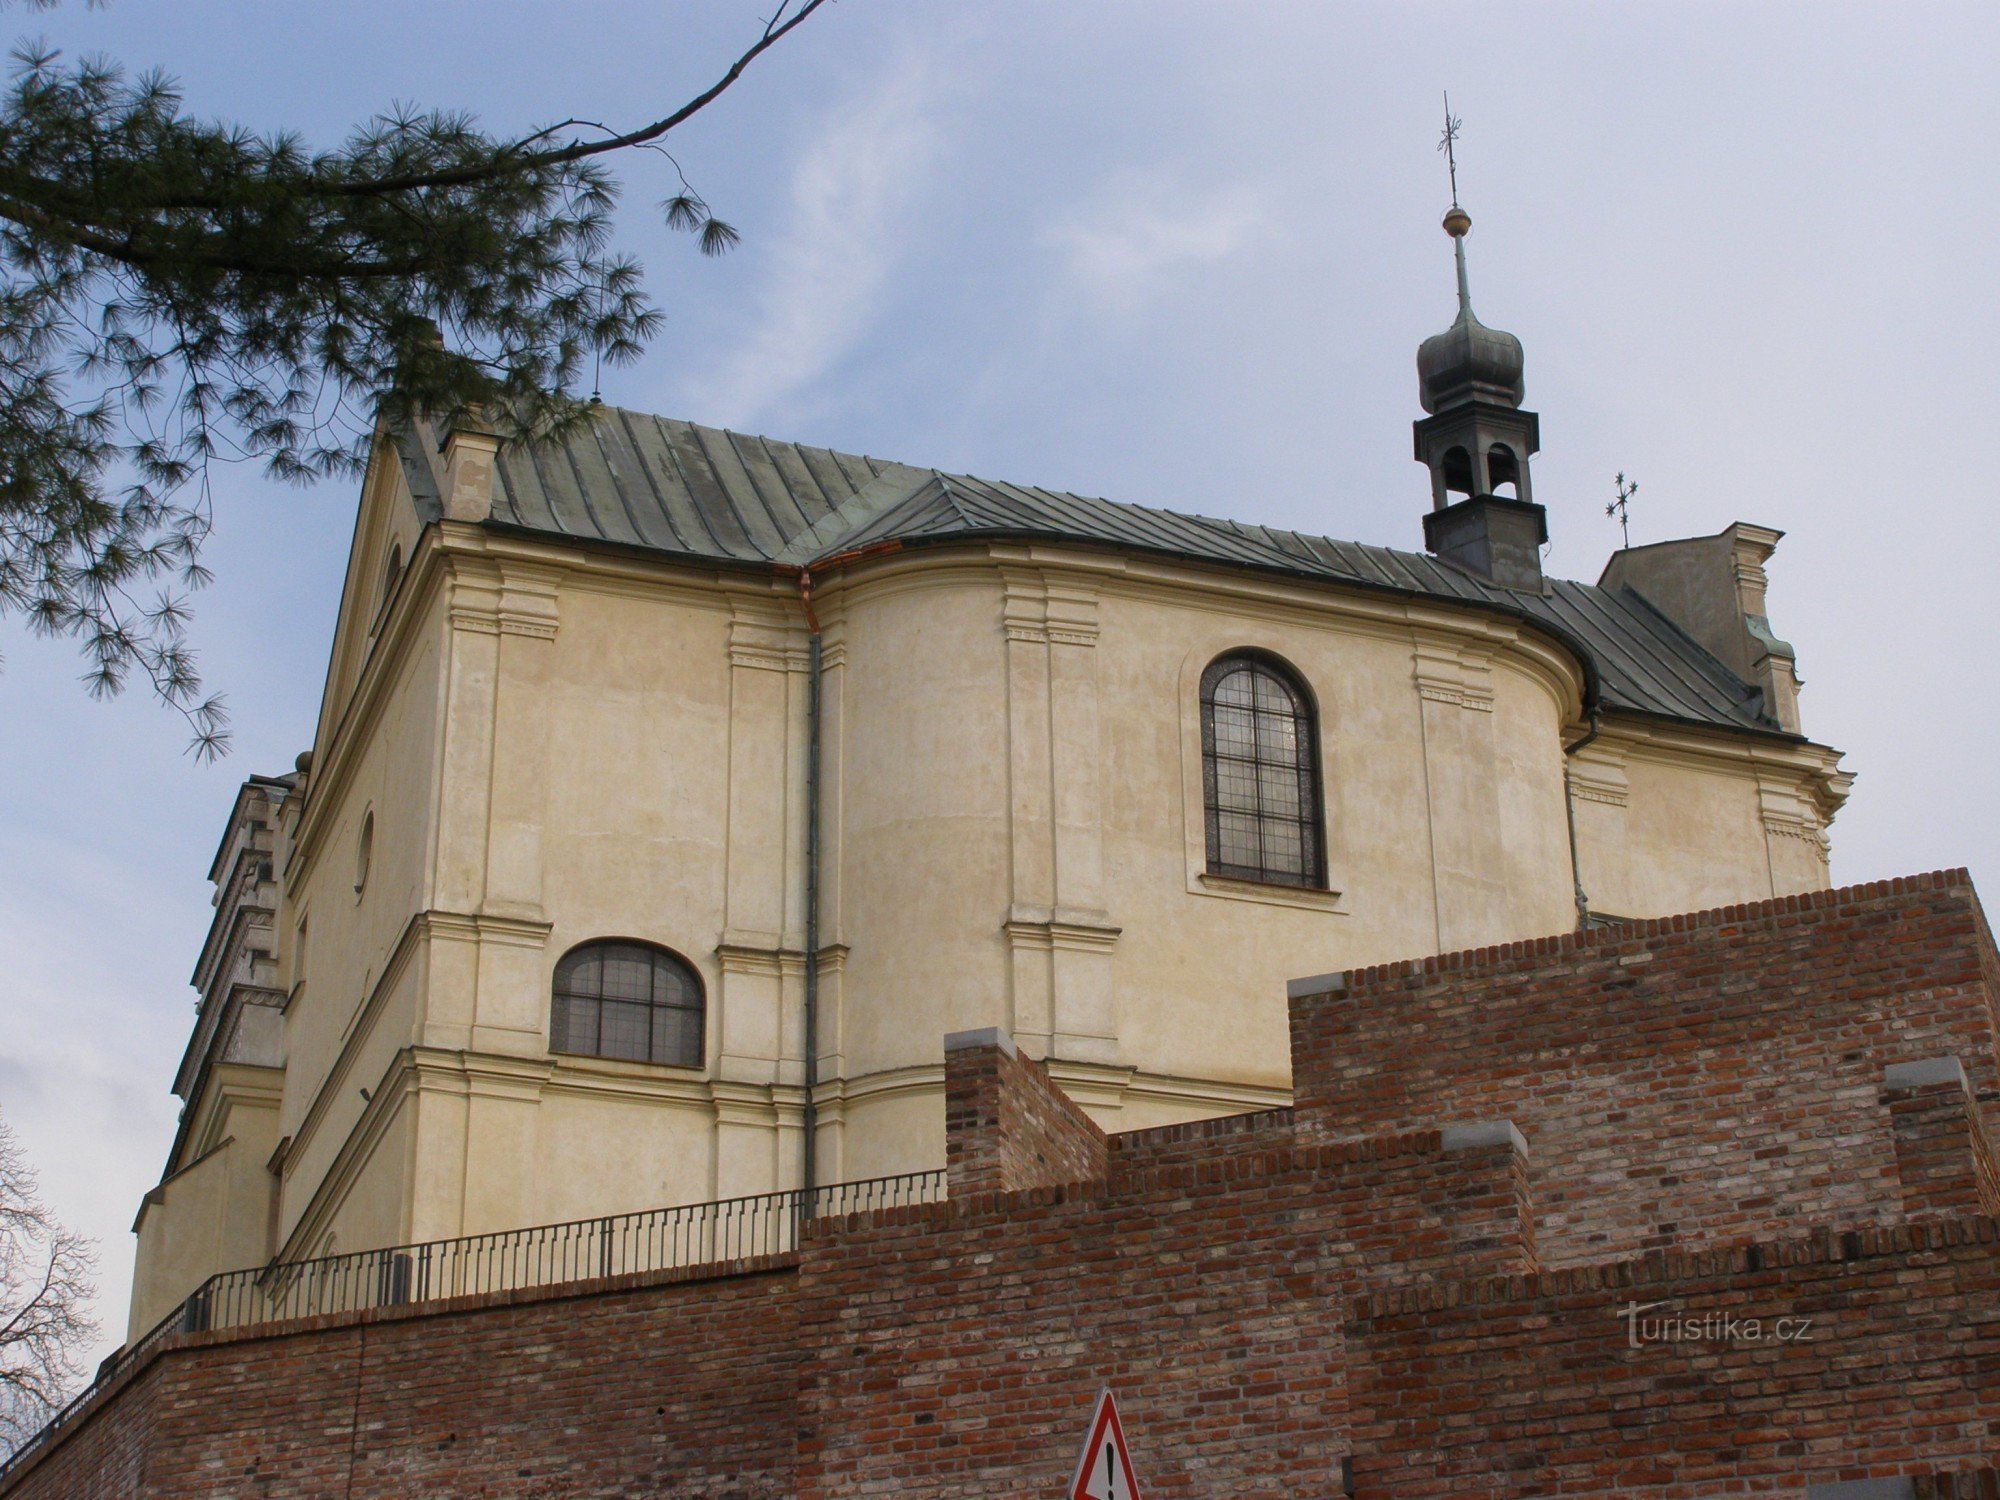 Градец Кралове - Церква св. Ян Непомуцький